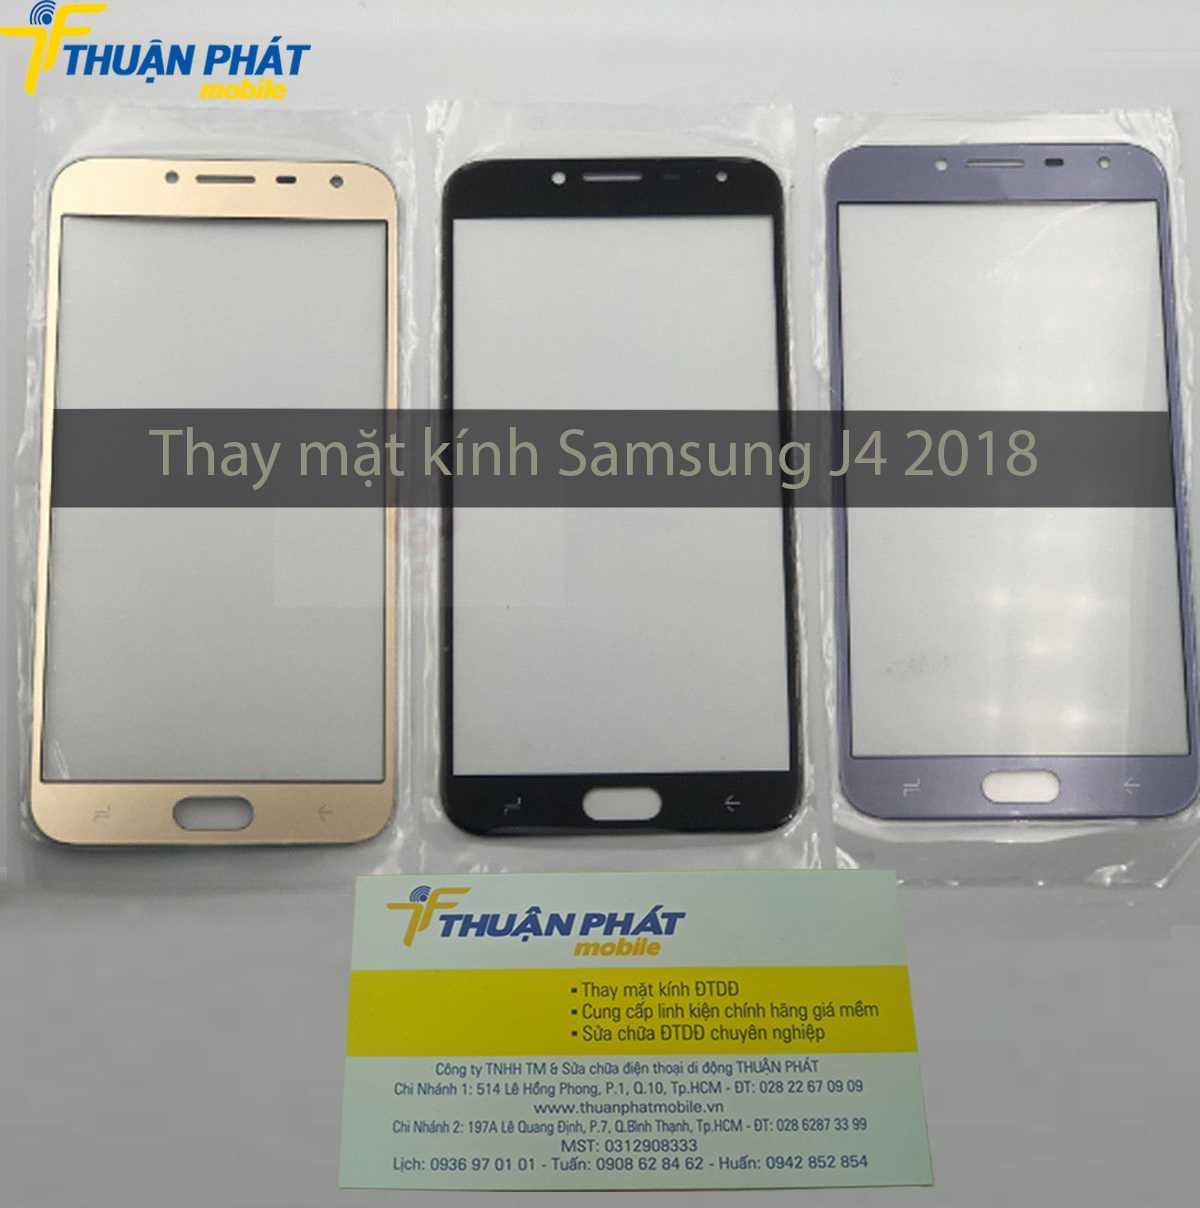 Thay mặt kính Samsung J4 2018 chính hãng tại Thuận Phát Mobile